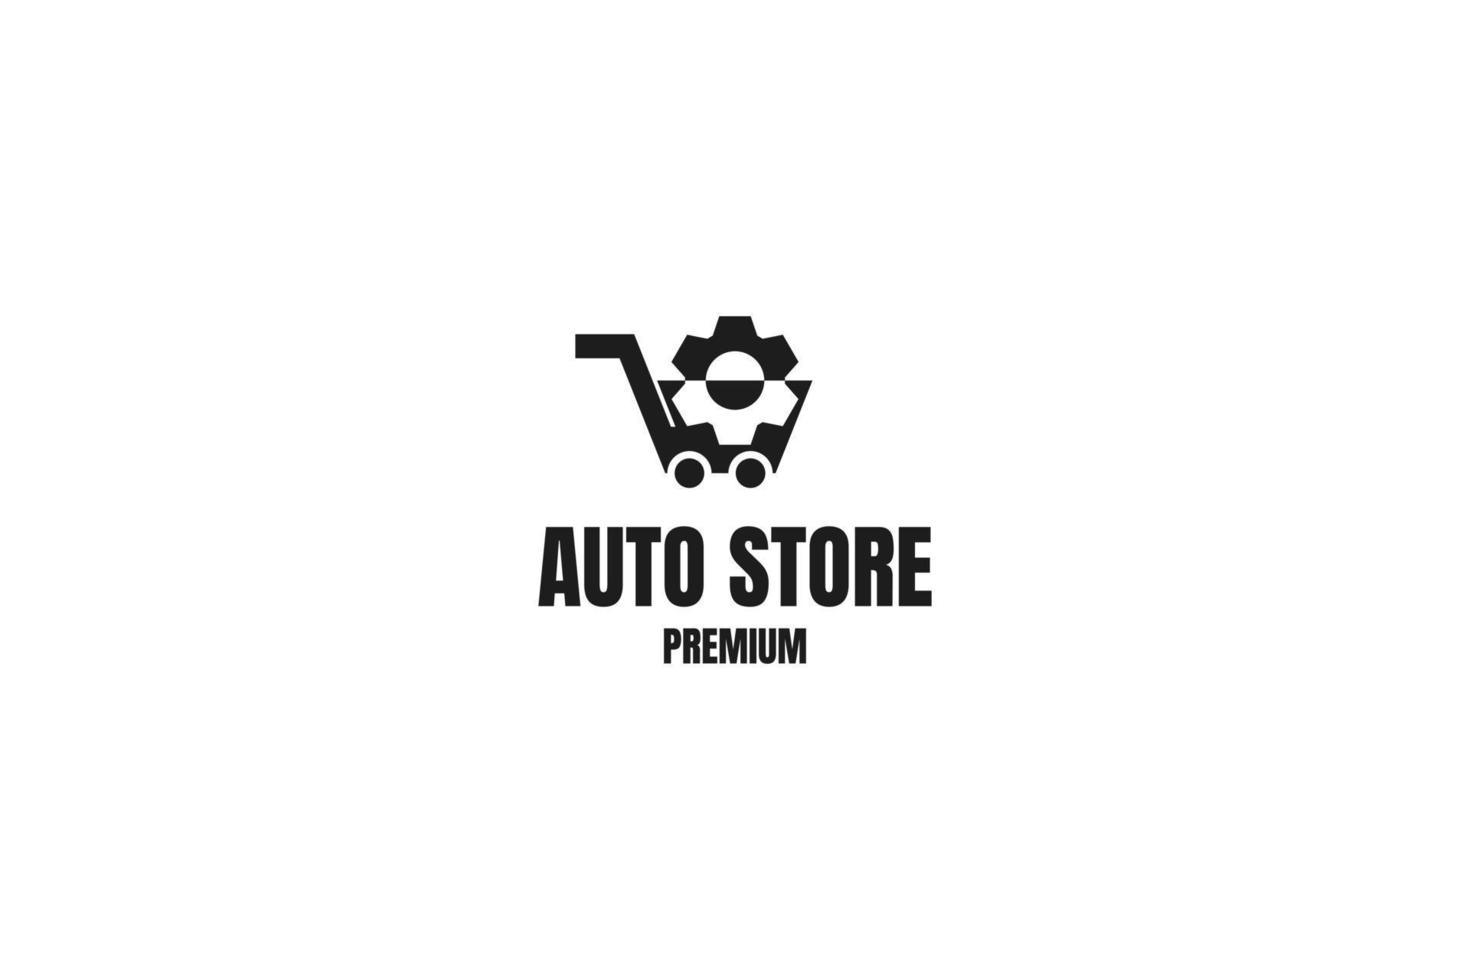 negozio di auto piatto con illustrazione vettoriale dell'icona del design del logo dell'ingranaggio del carrello